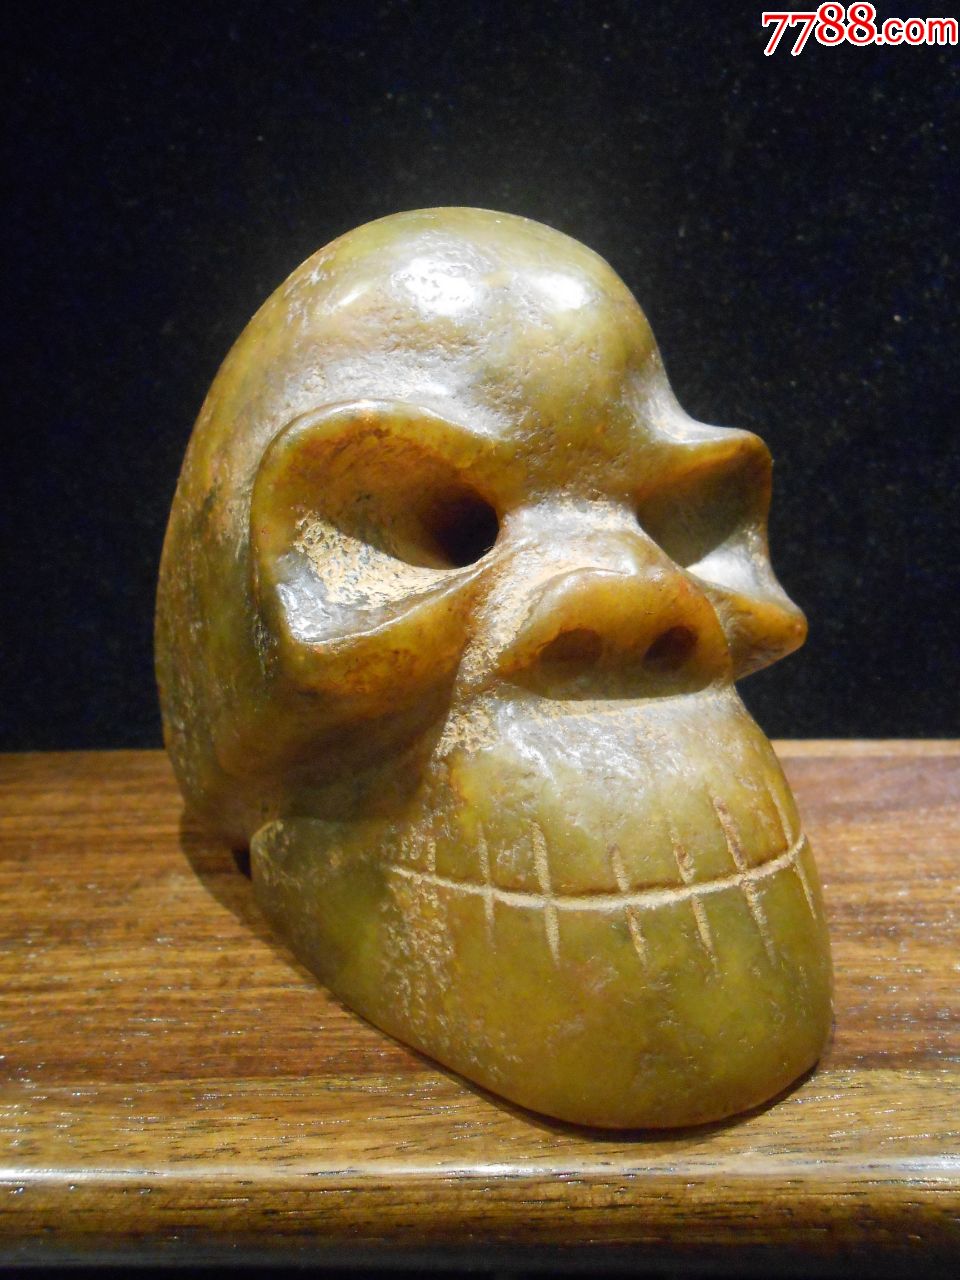 红山玉骷髅头雕件,雕刻骷髅头,玉质油润,包浆老气,重3斤多,无托,底价